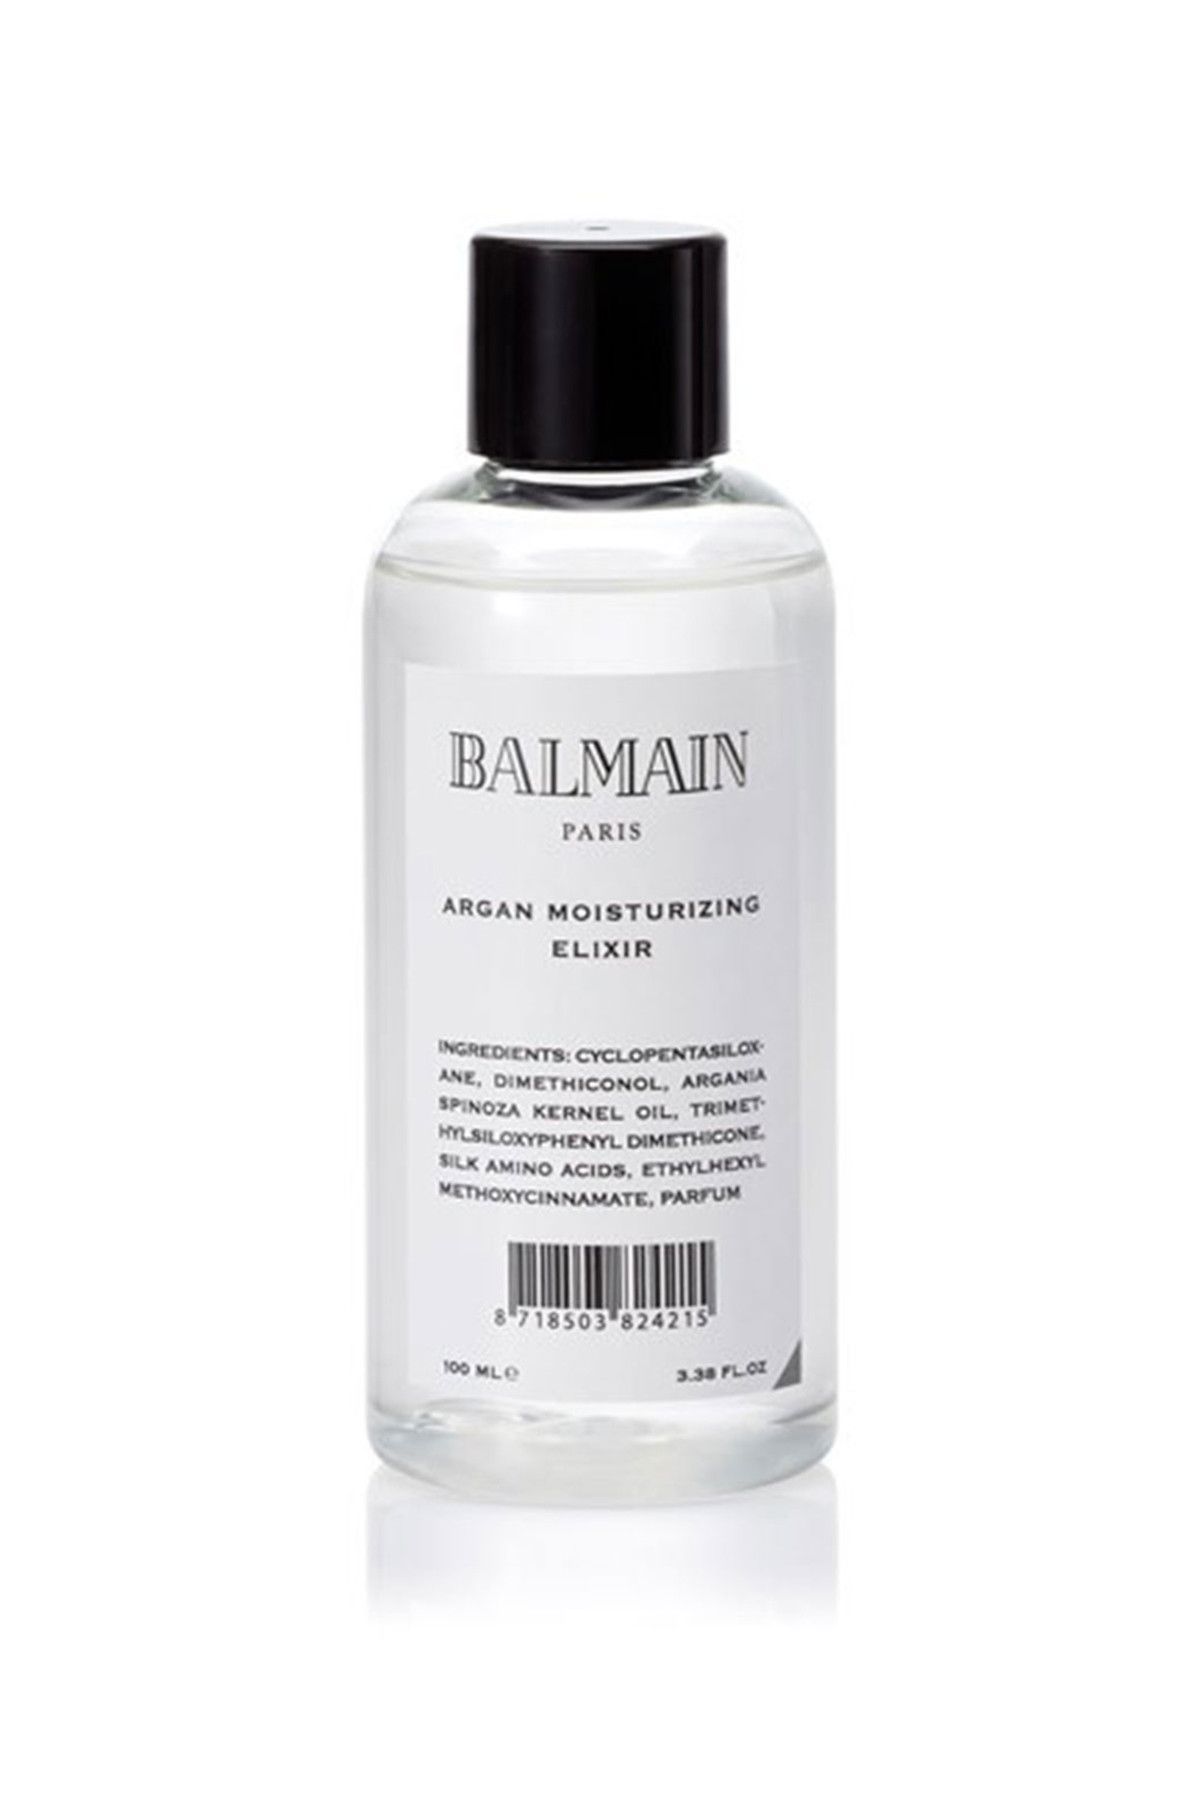 BALMAIN Argan Özlü Saç Serumu - Argan Elixir 100 ml 8718503824215